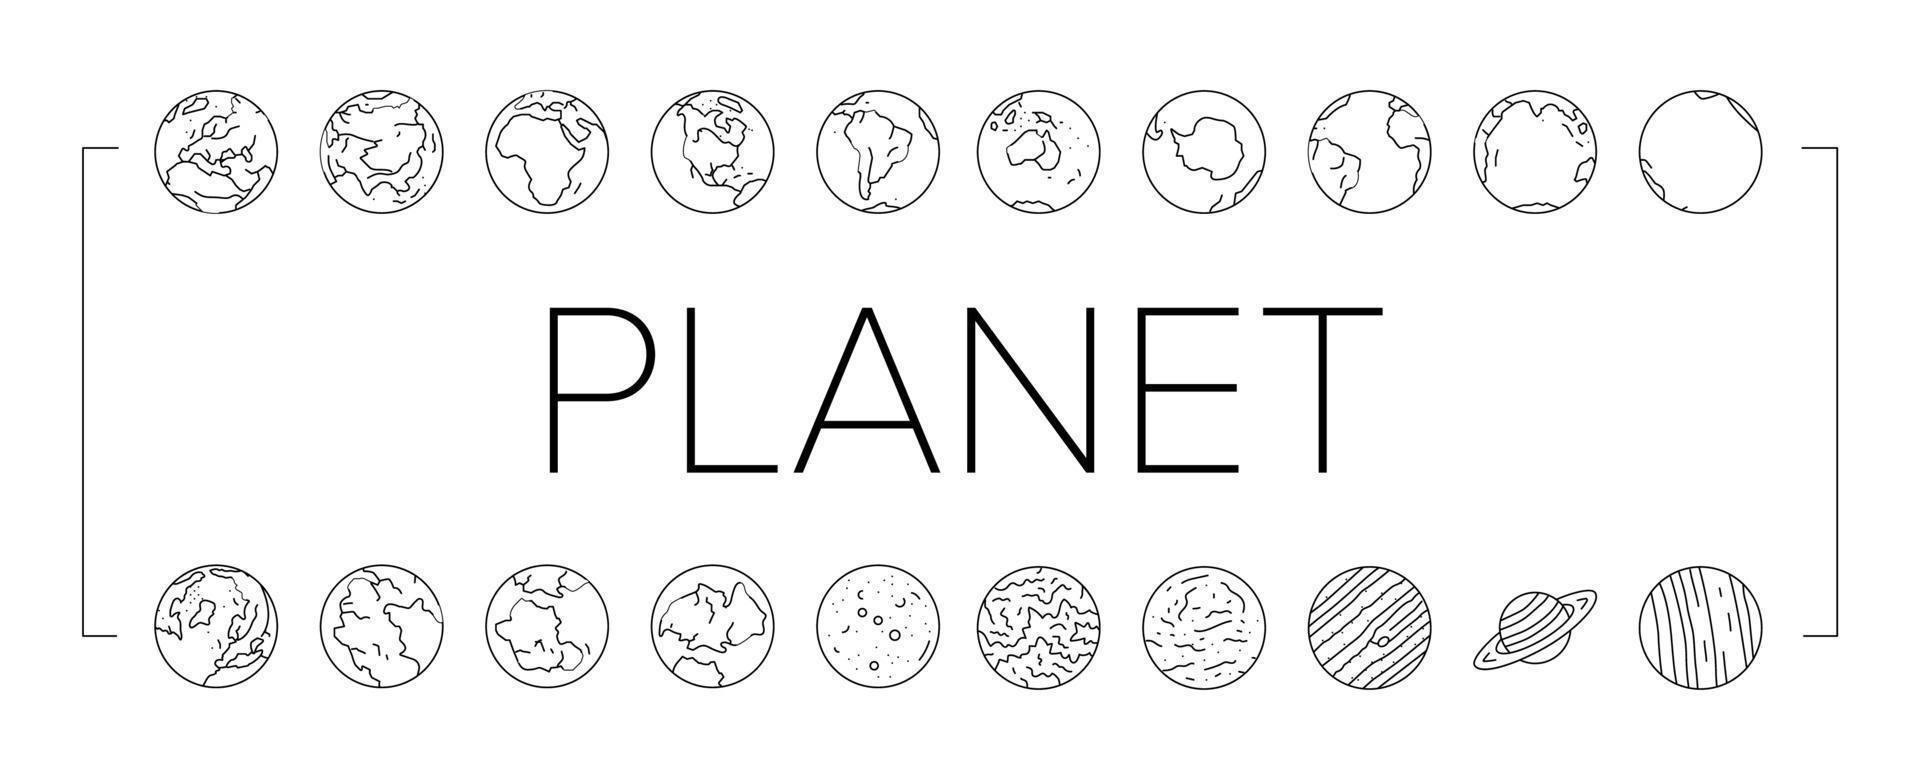 terra mondo pianeta globo carta geografica icone impostato vettore